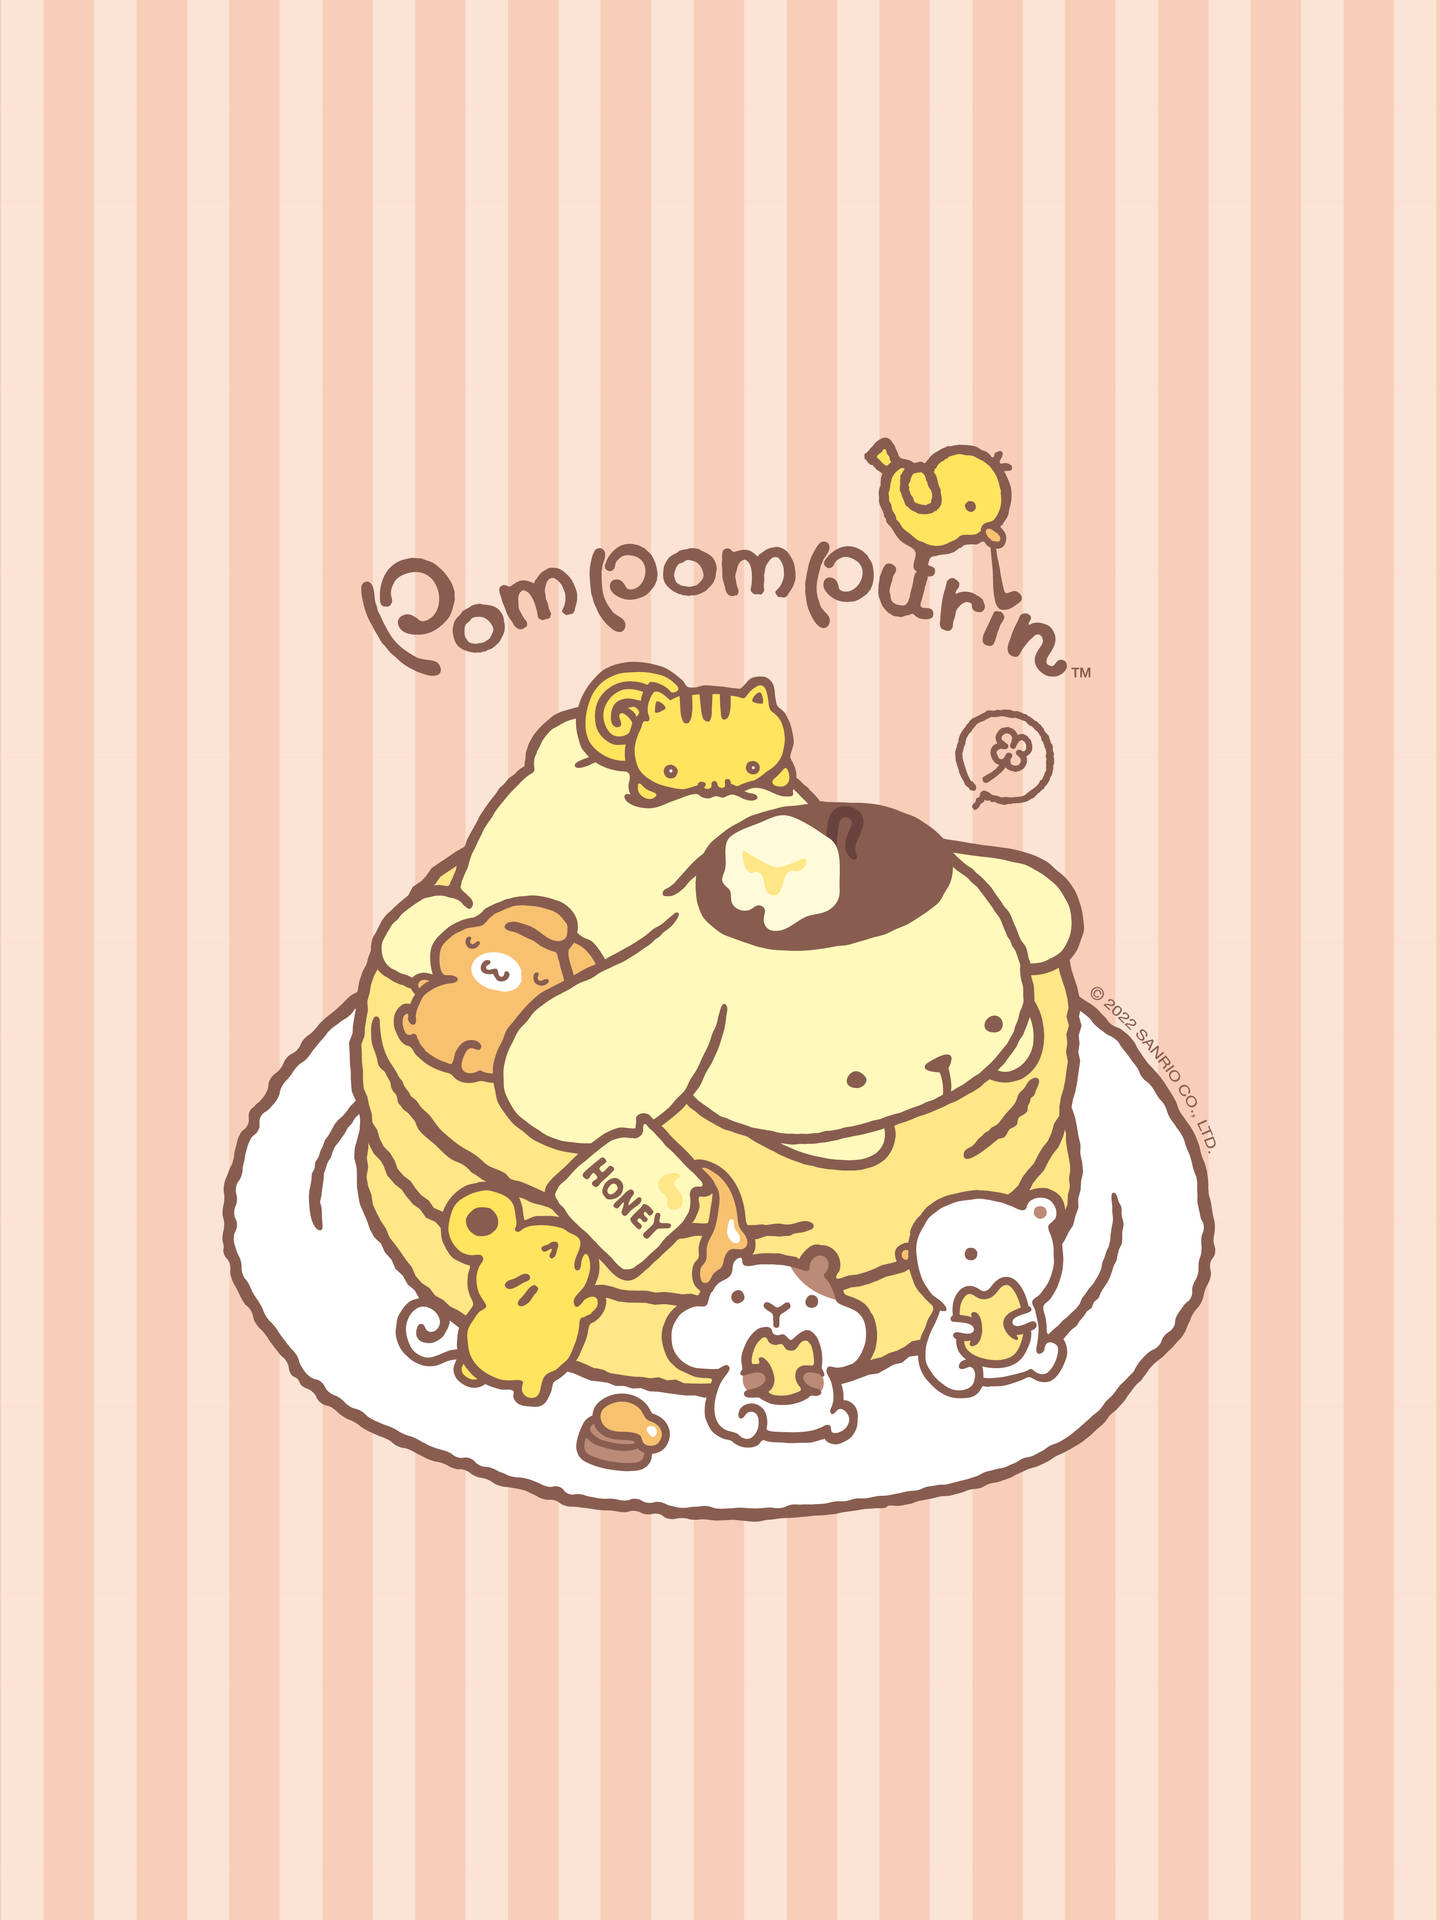 Pompompurin, den elskede Sanrio-karakter, spreder nogle søde smil. Wallpaper